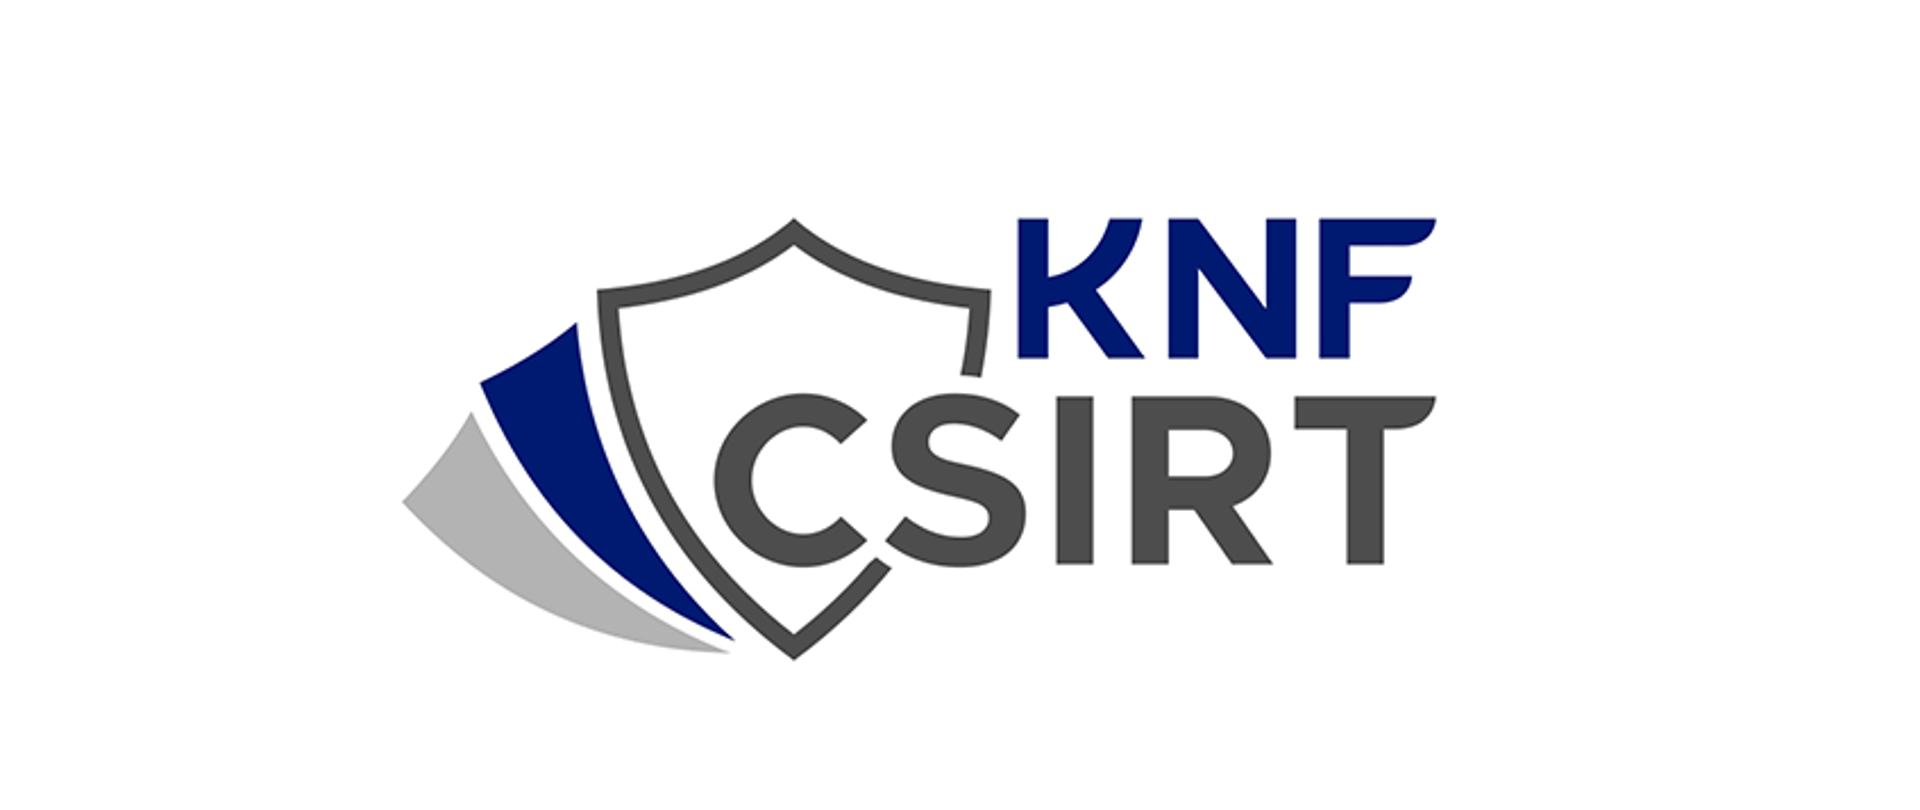 Szaro-granatowe logo - potrójna tarcza z napisem KNF CSIRT